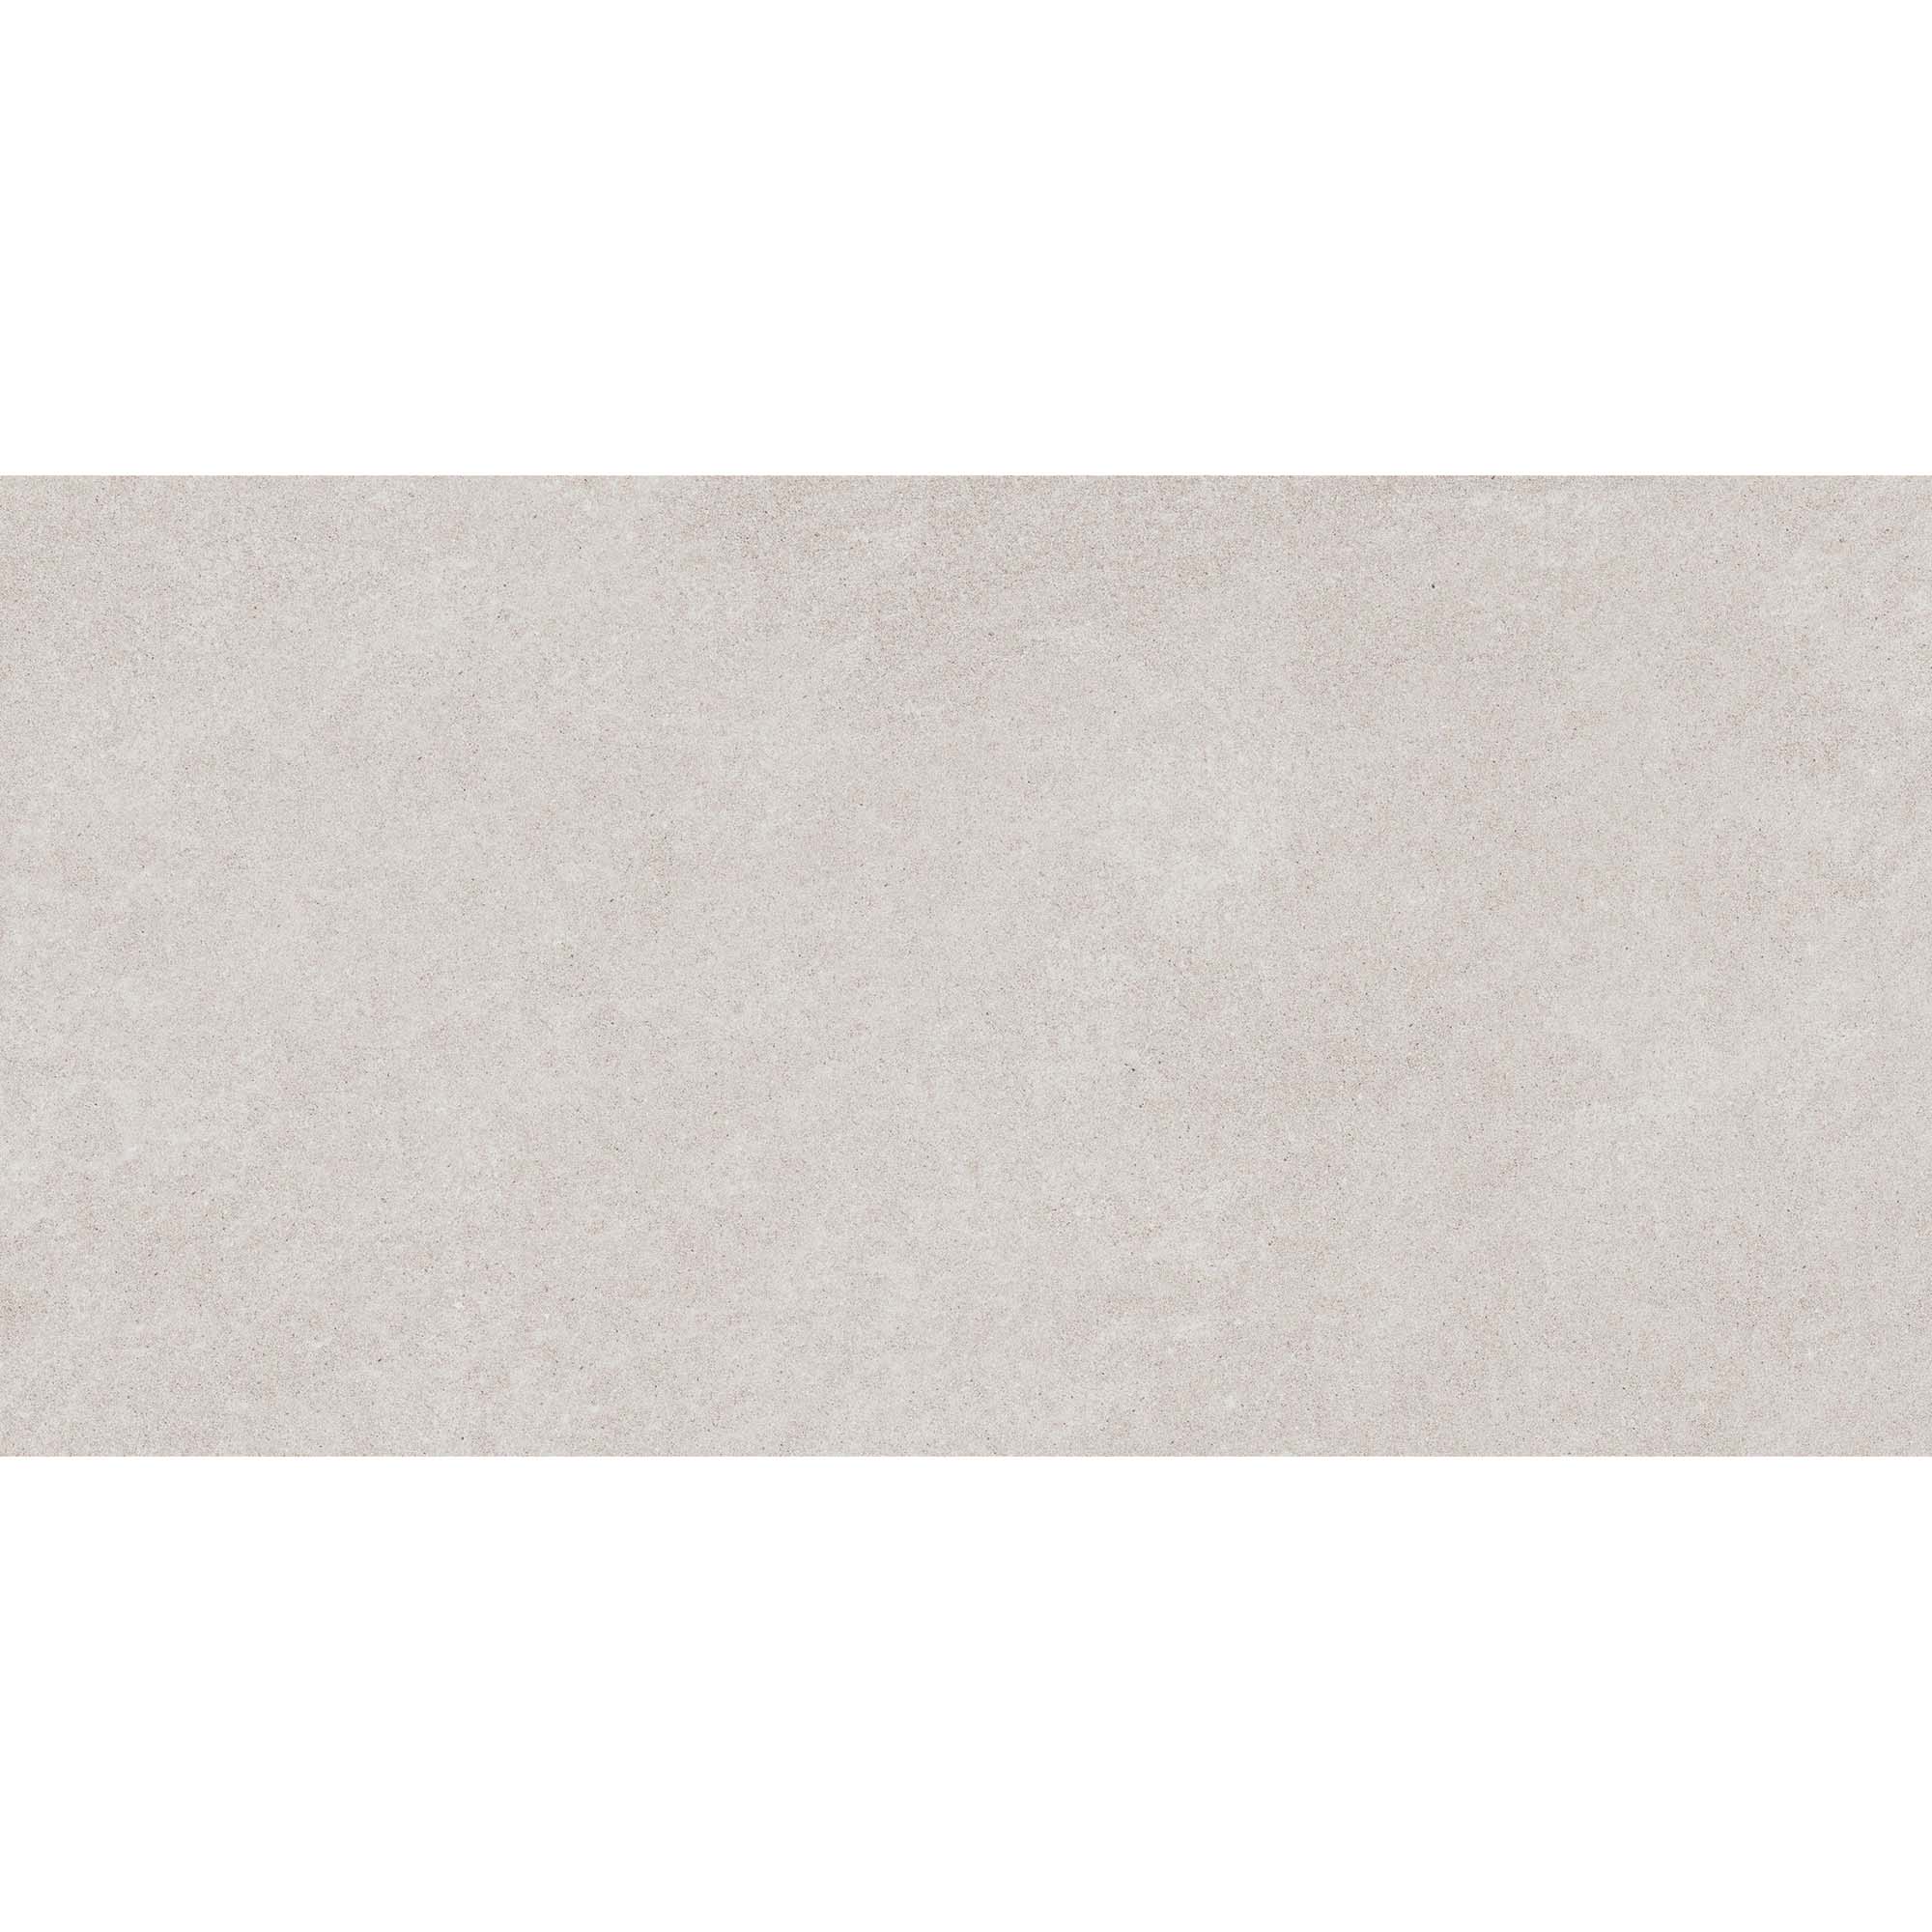 Плитка Estima Luna LN00 неполированный белый 60x120 см плитка estima montis mn01 39212 80х80 см неполированный белый